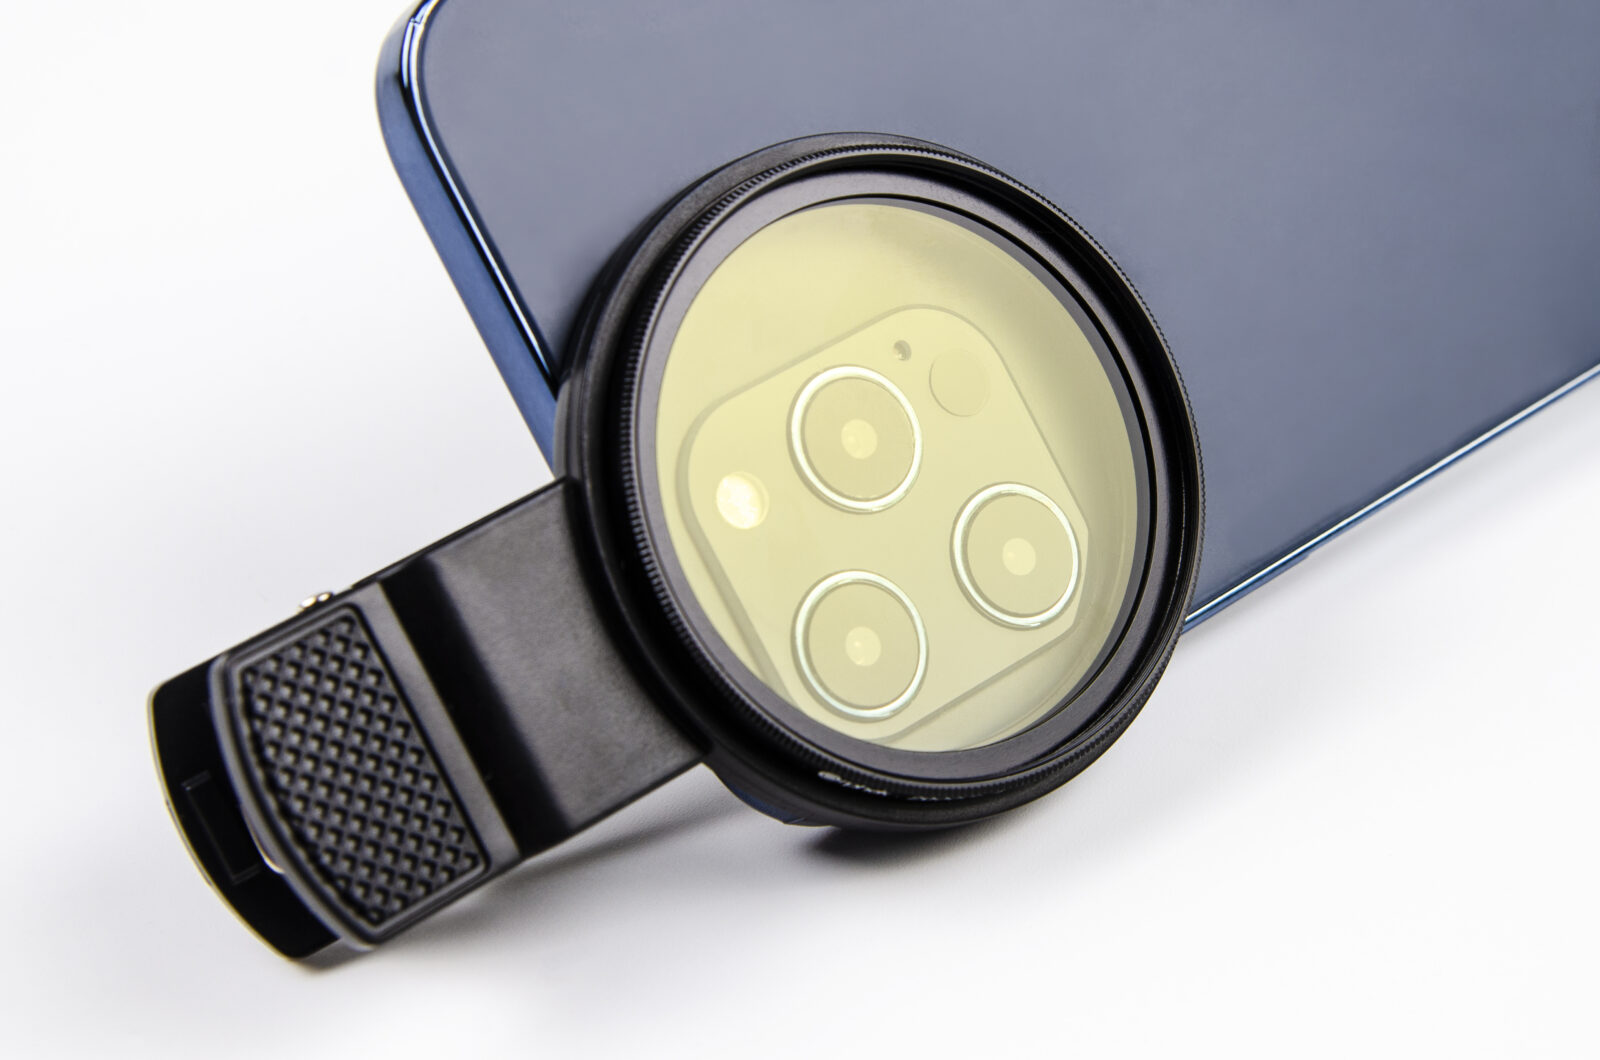 Coral Lens Kit gir et nytt ekstra bredere objektiv på 52 mm